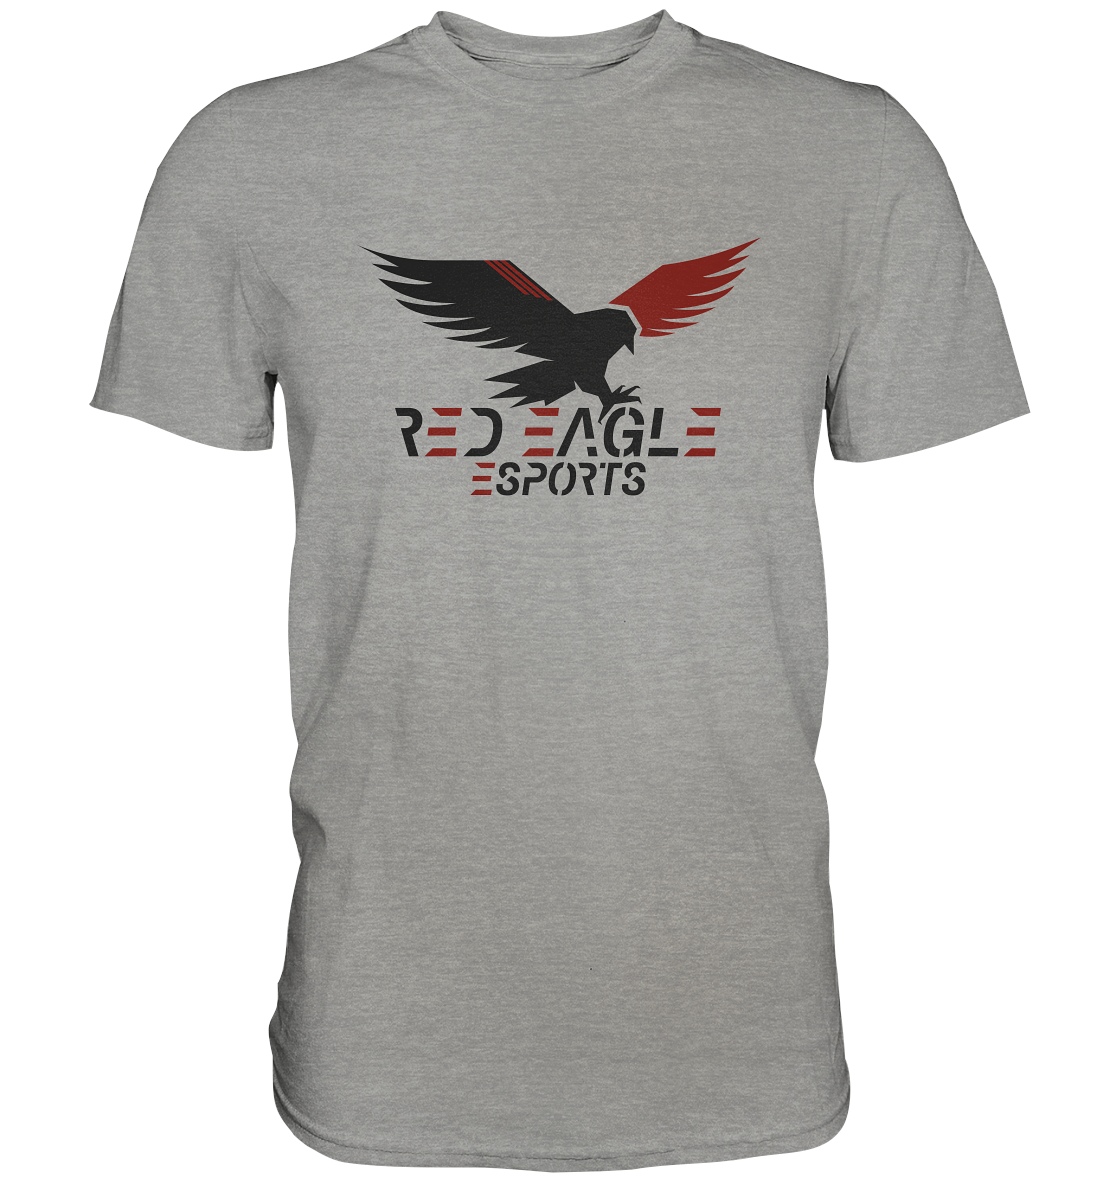 RED EAGLE ESPORTS - Basic Shirt